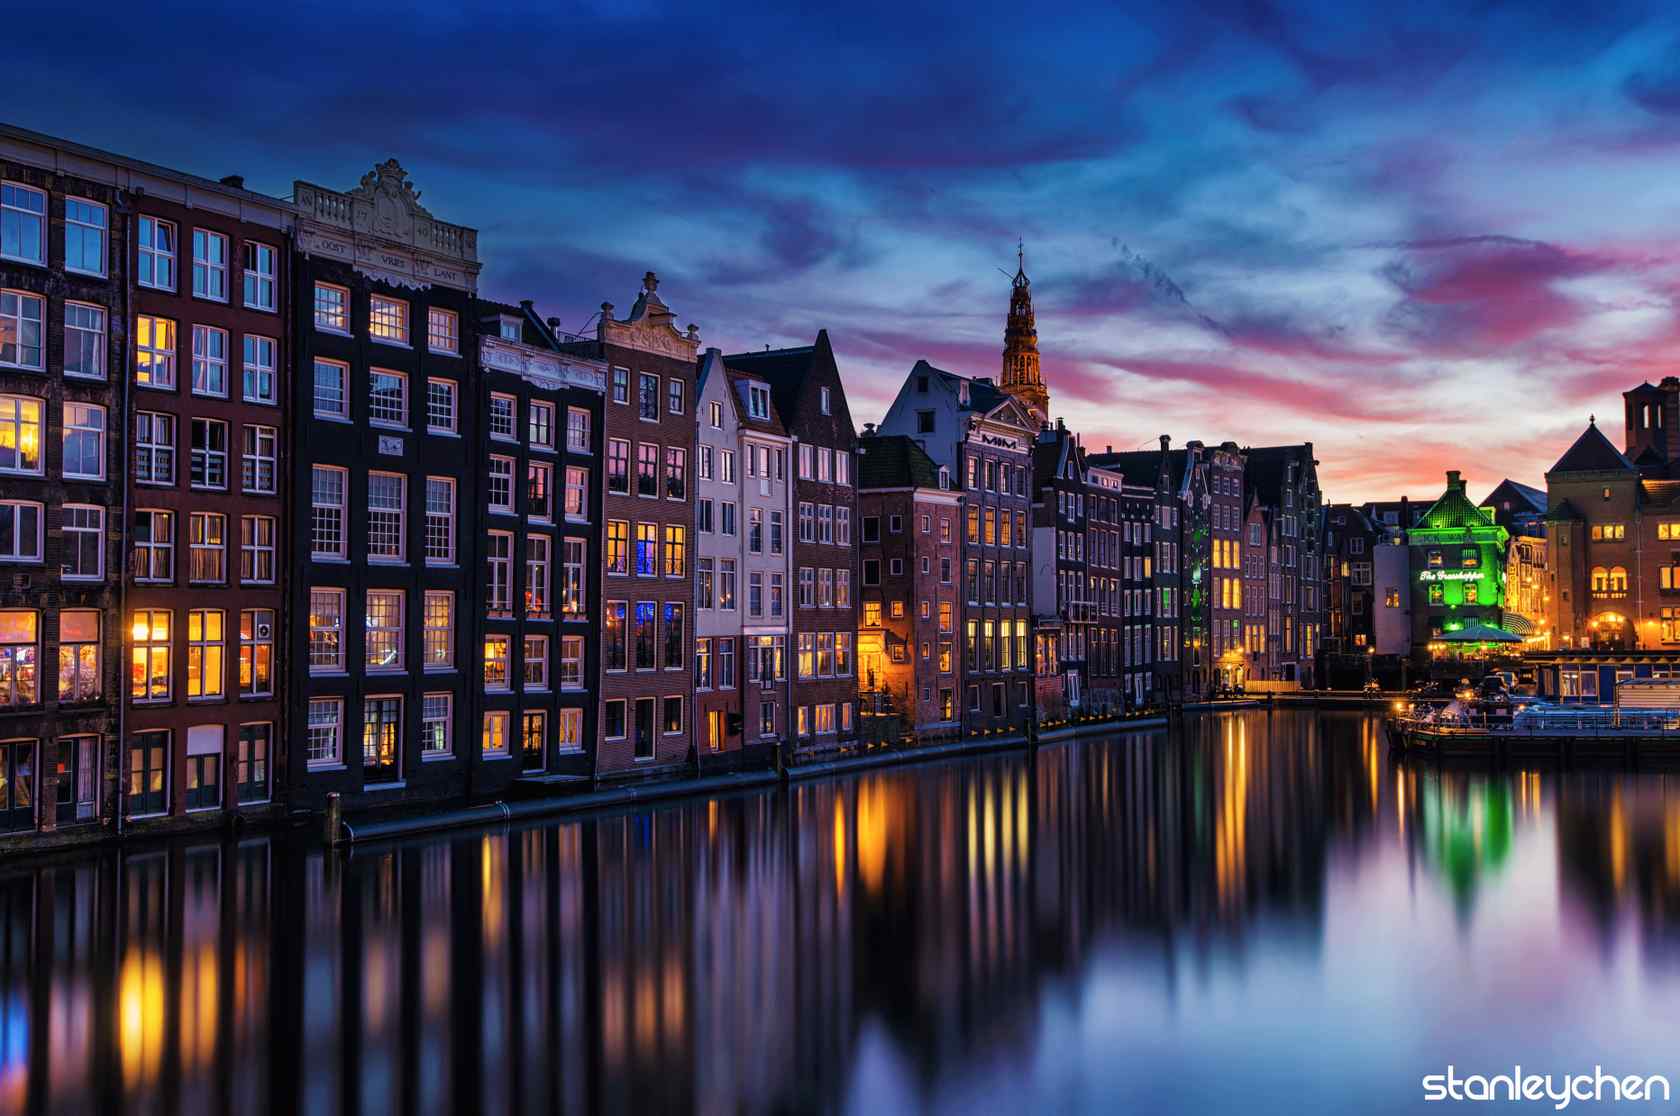 超美的荷兰夜景风景壁纸